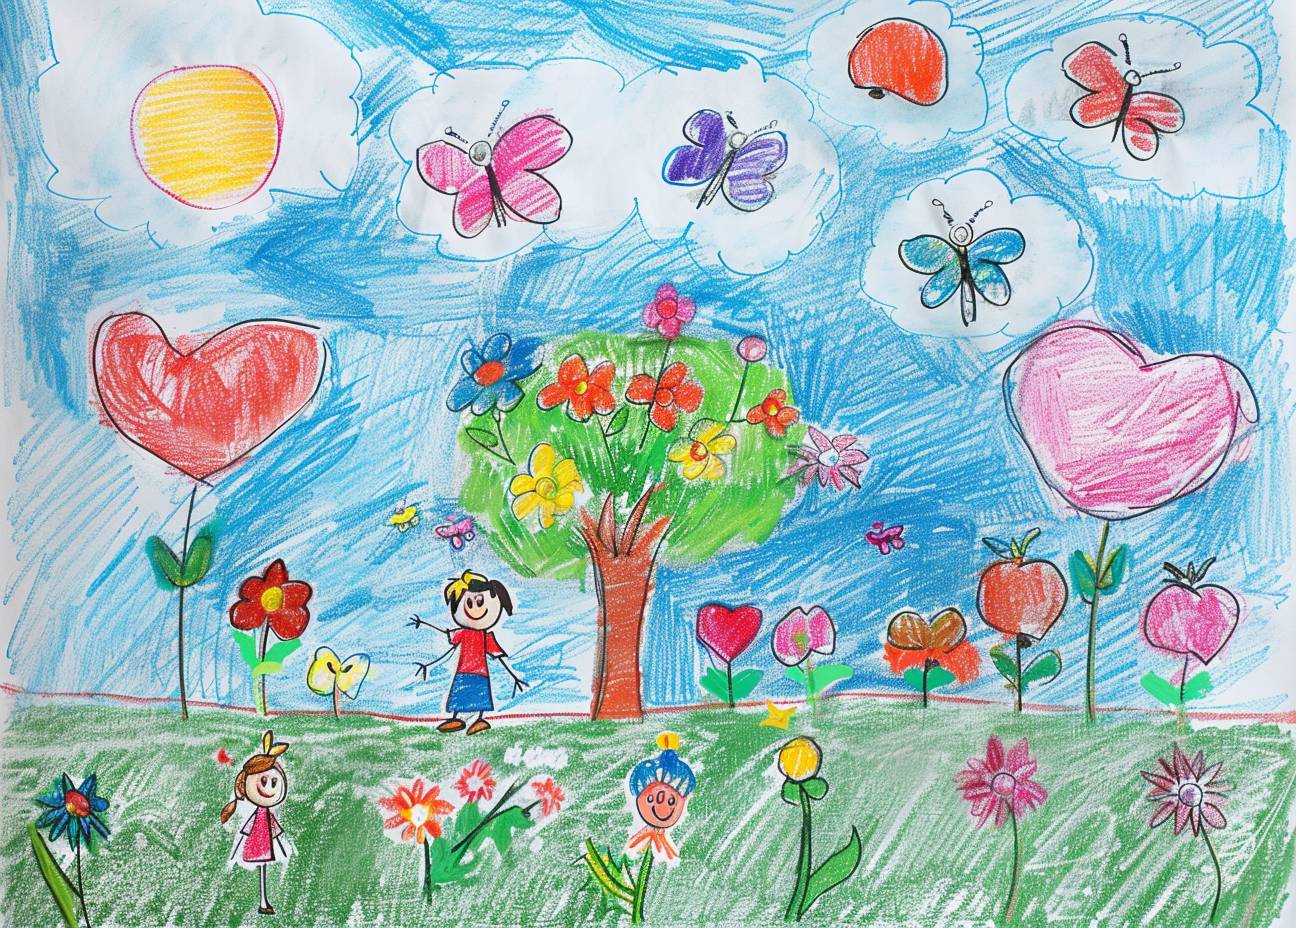 太った子供が手作りで色鉛筆で白い紙に描いた単純な原始アートのスタイルの中に魔法の空と多くの花や蝶があり、子供の本向けの魔法のイメージです。背景は空の色、簡単な線で影がないカートゥーンの可愛らしさがあり、彼らの後ろにはリンゴの木があります。